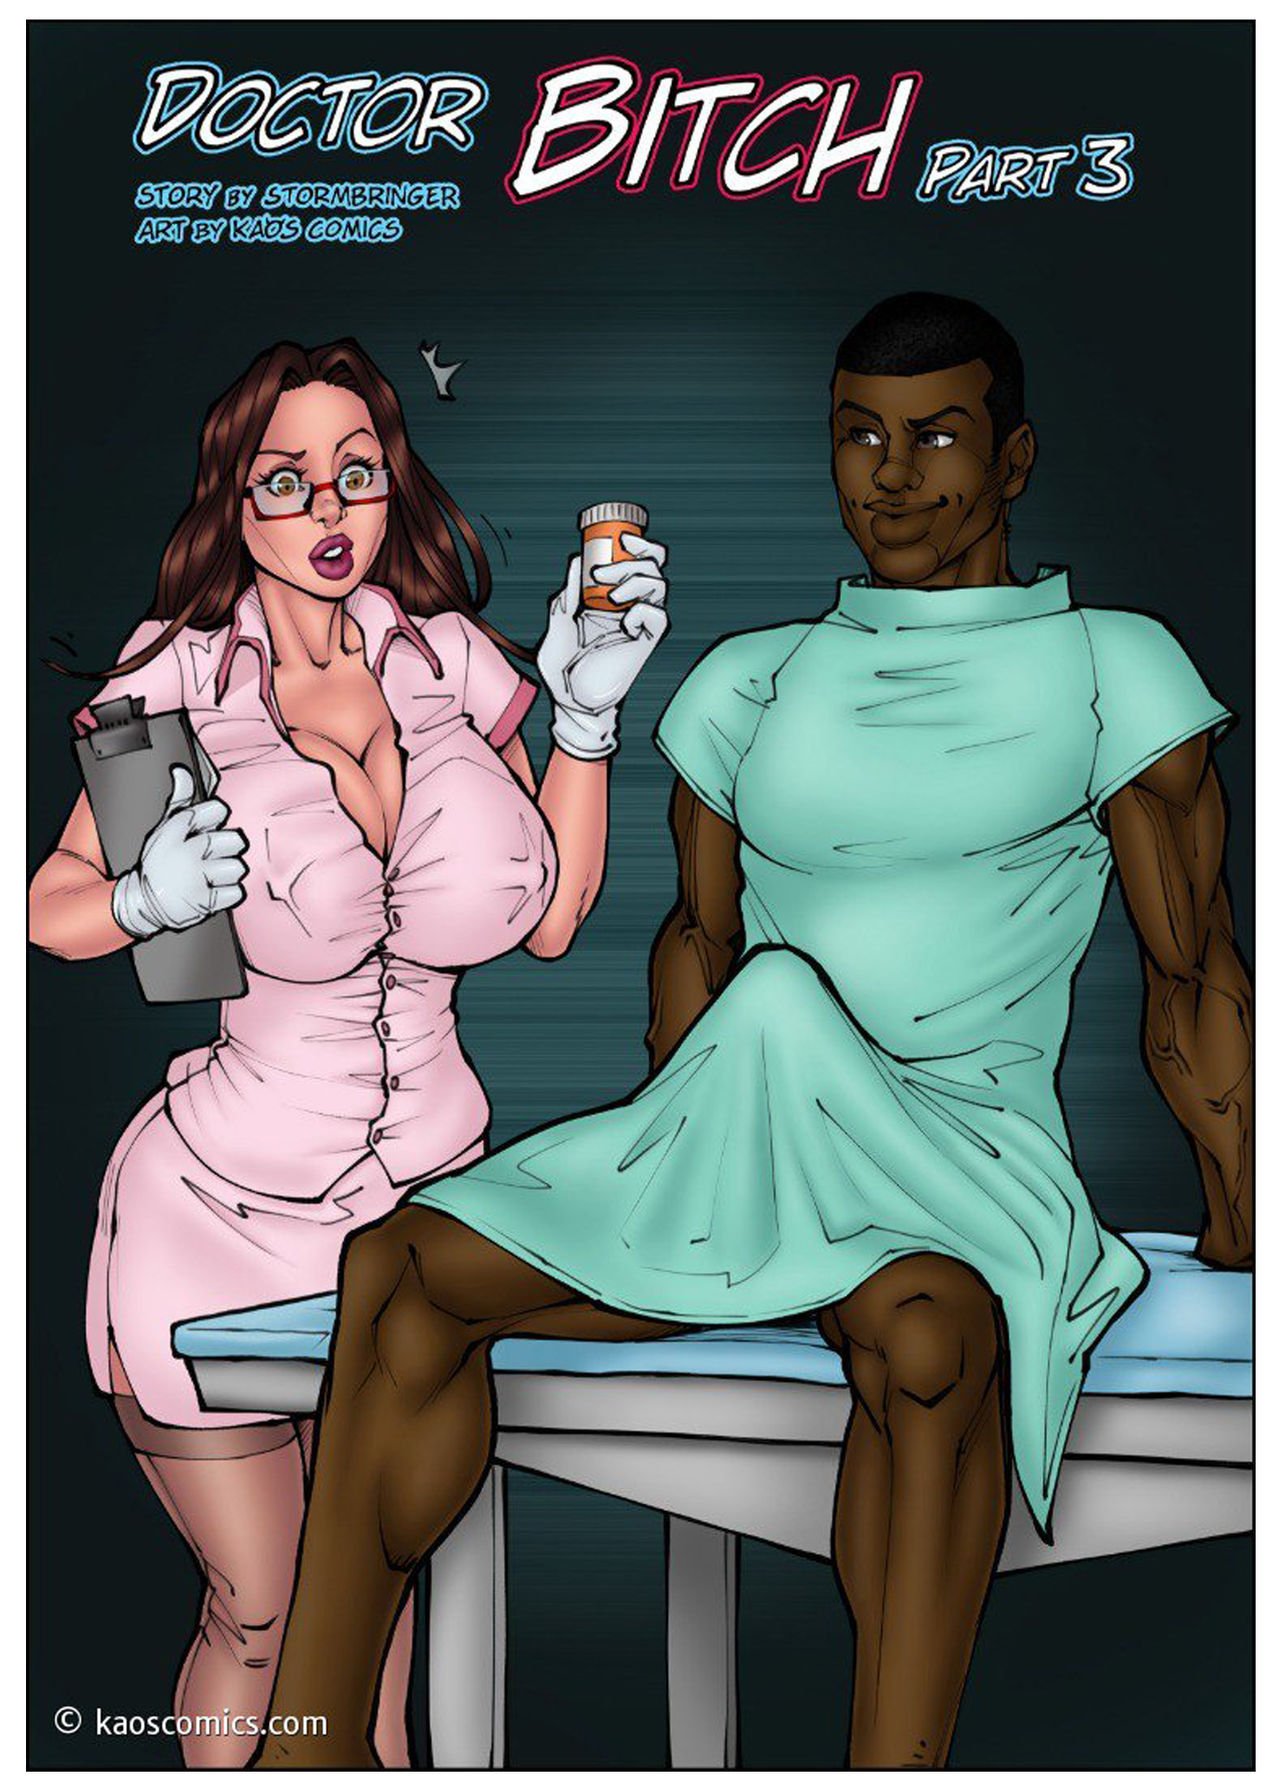 Mother Cartoon Porn Doctor - Doctor Bitch 3 (FULL) - Kaos Comics - FreeAdultComix